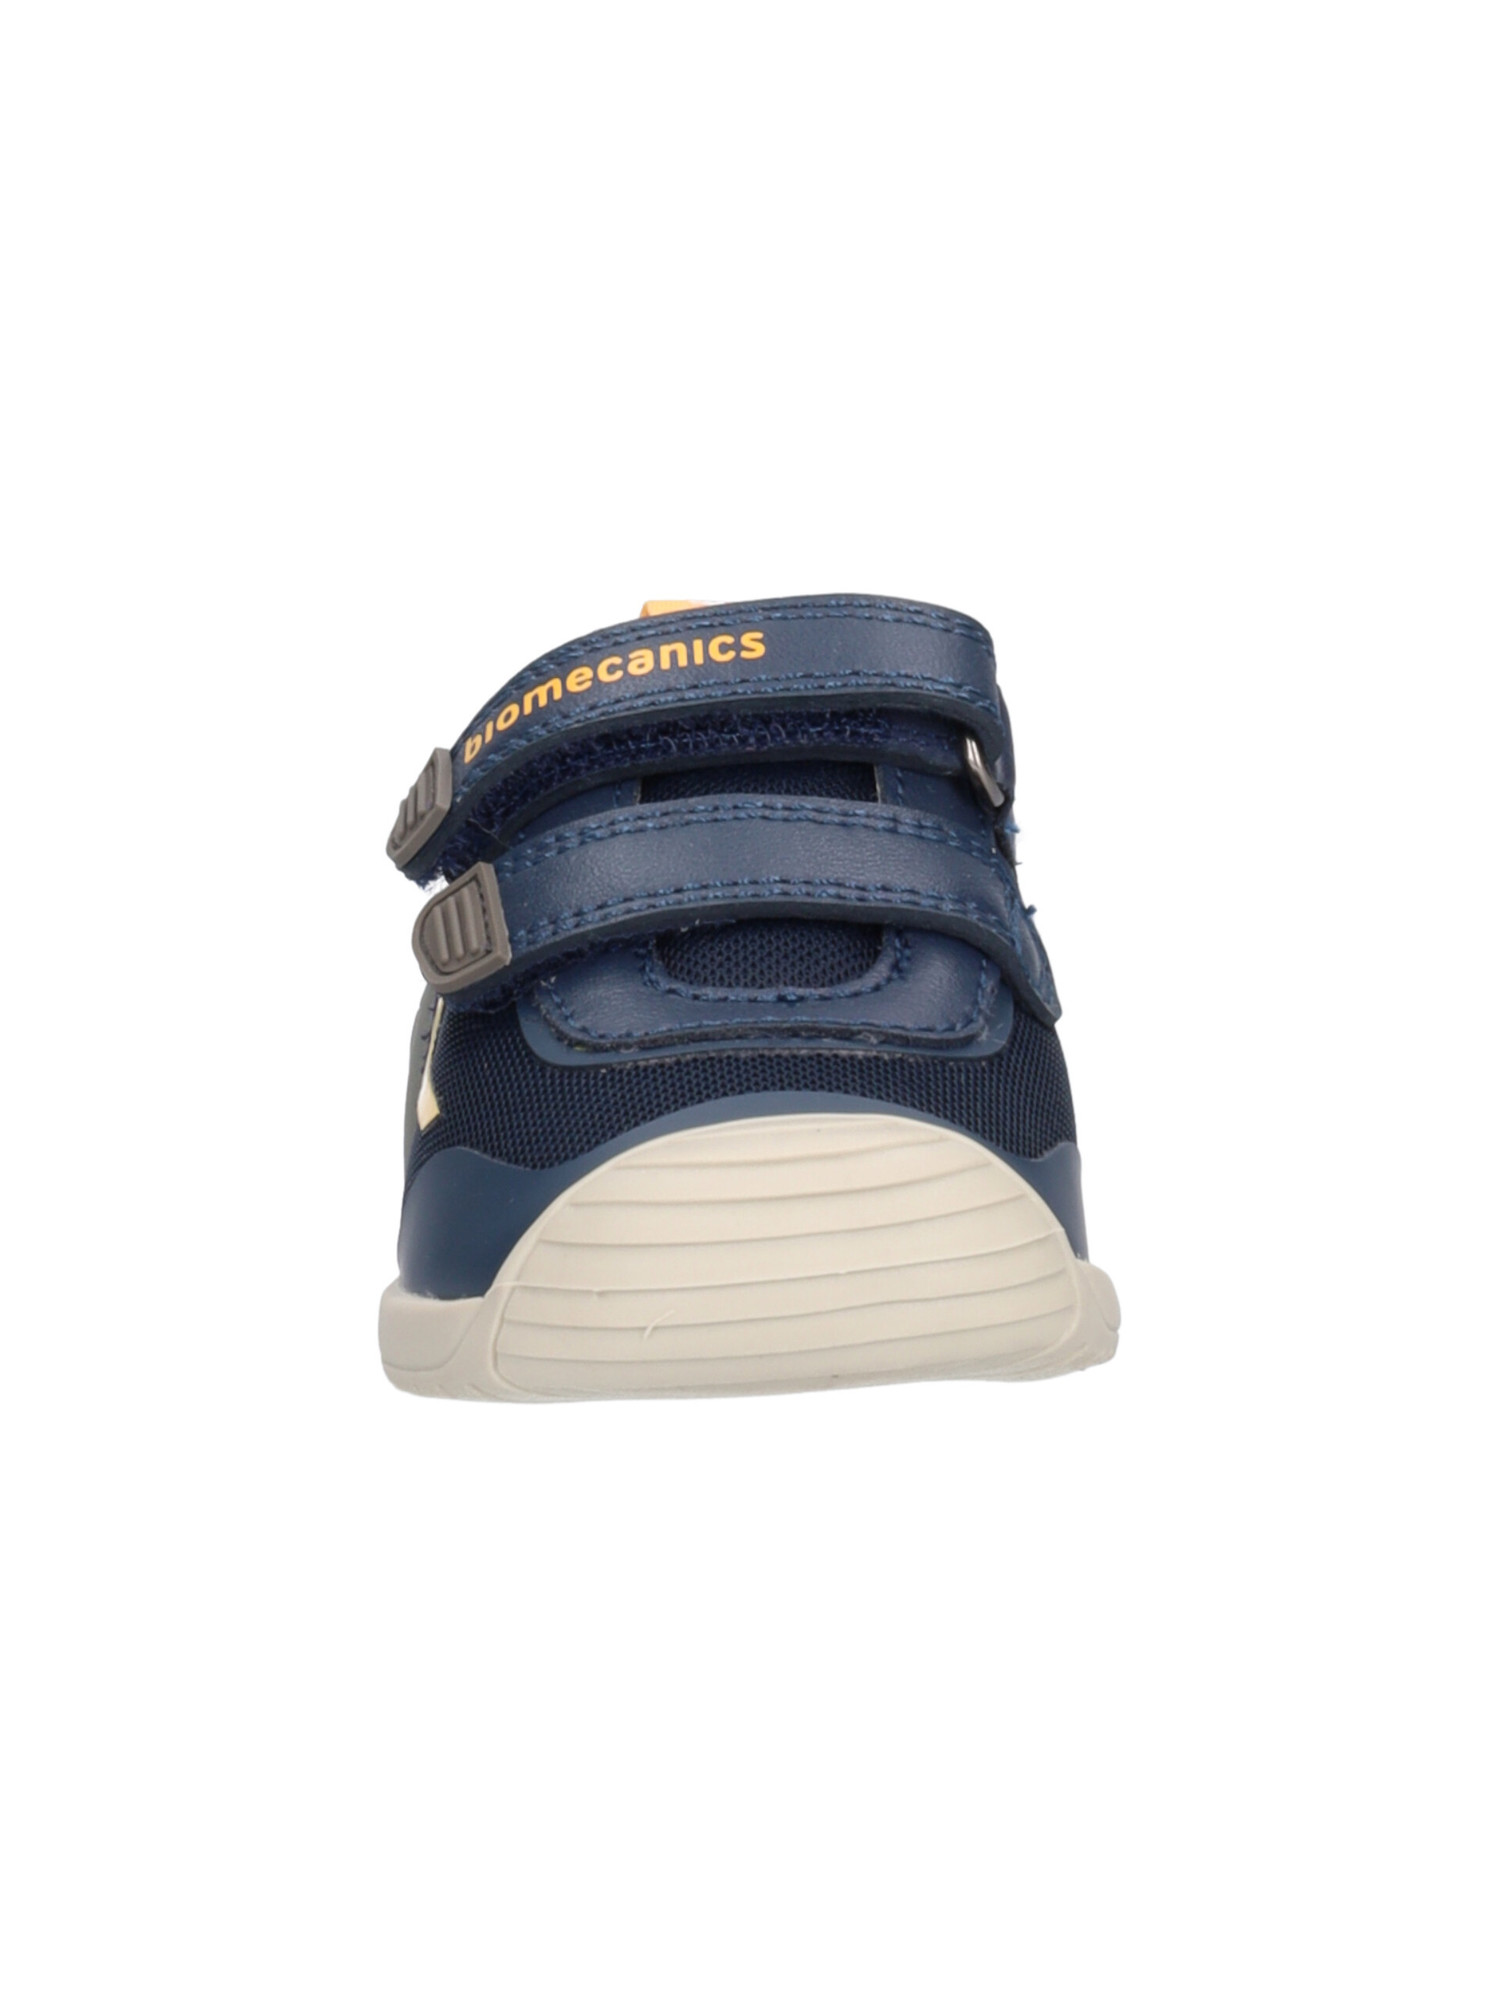 scarpa-biomecanics-primi-passi-bambino-blu-1e3377